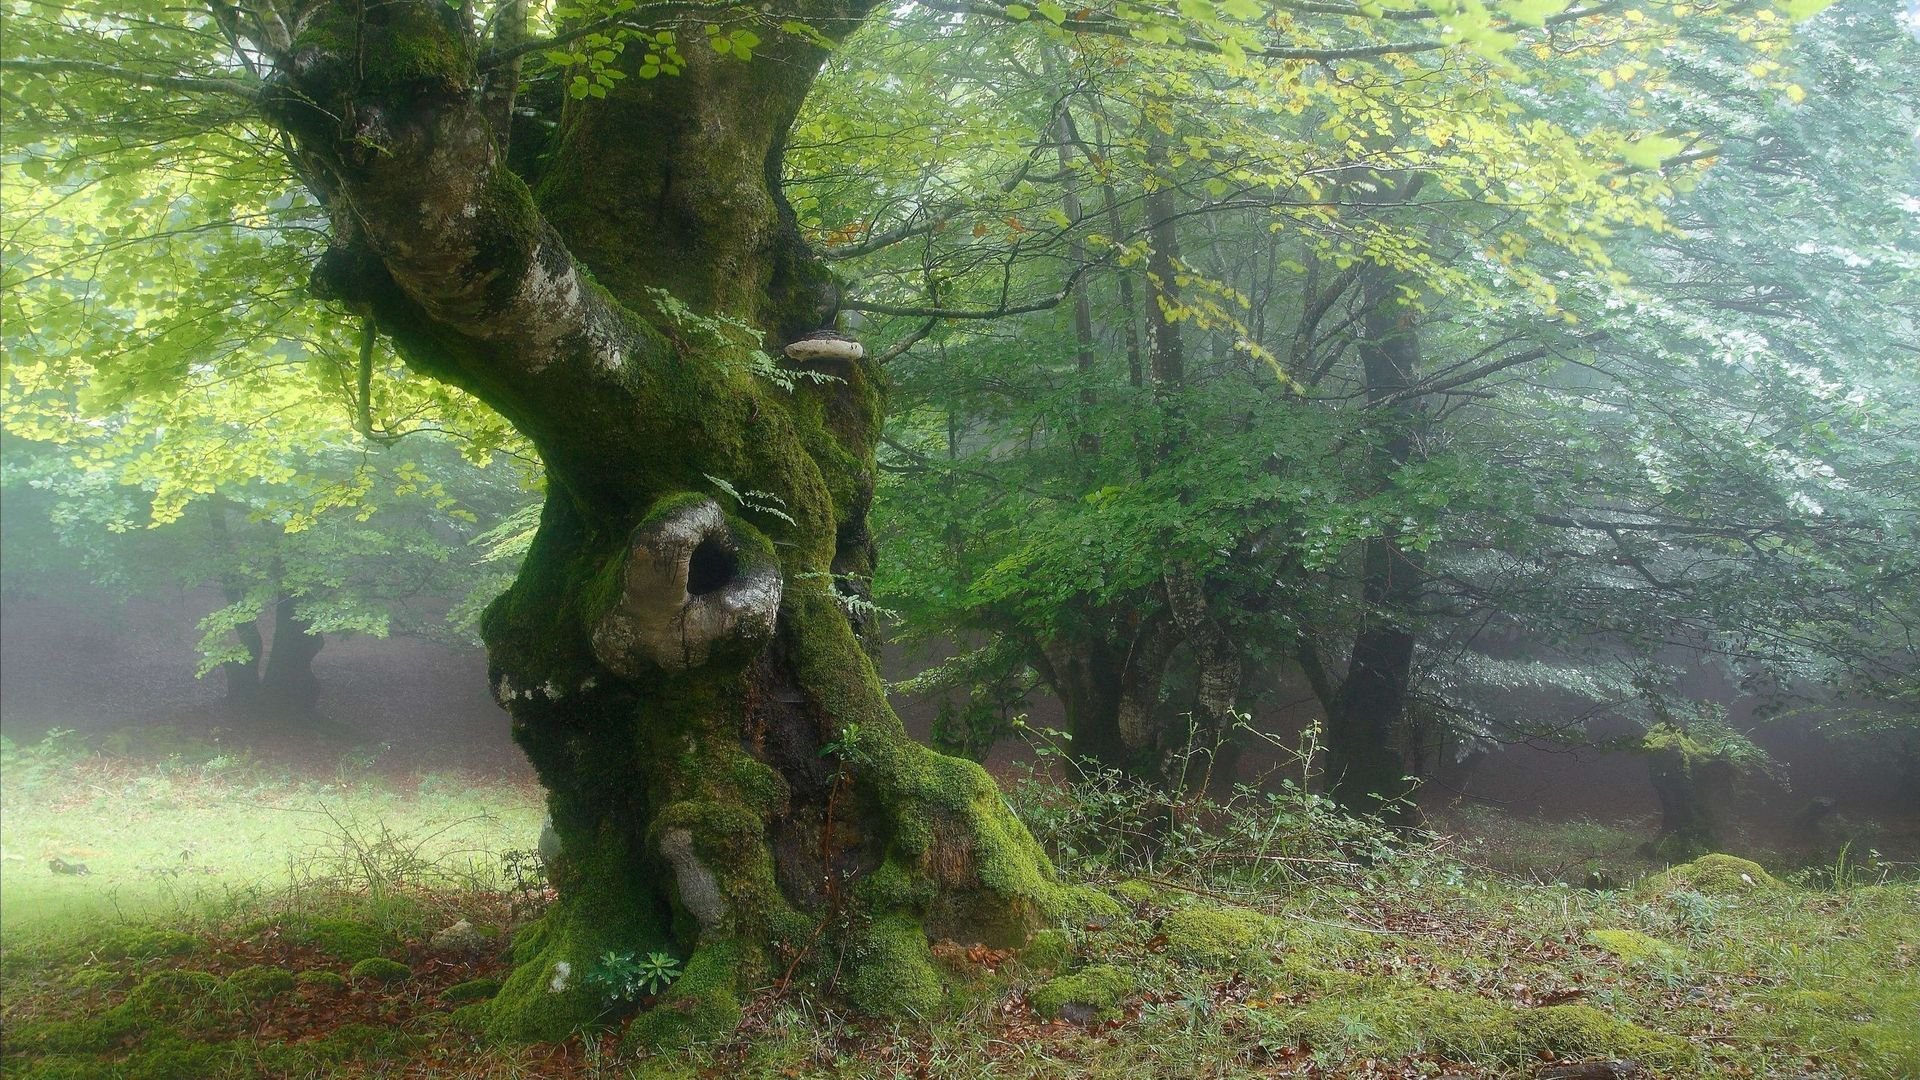 Шервудский лес в Англии. Лесная опушка дремучего леса. Bosco delle Querce (дубовый лес). Беловежская пуща деревья.